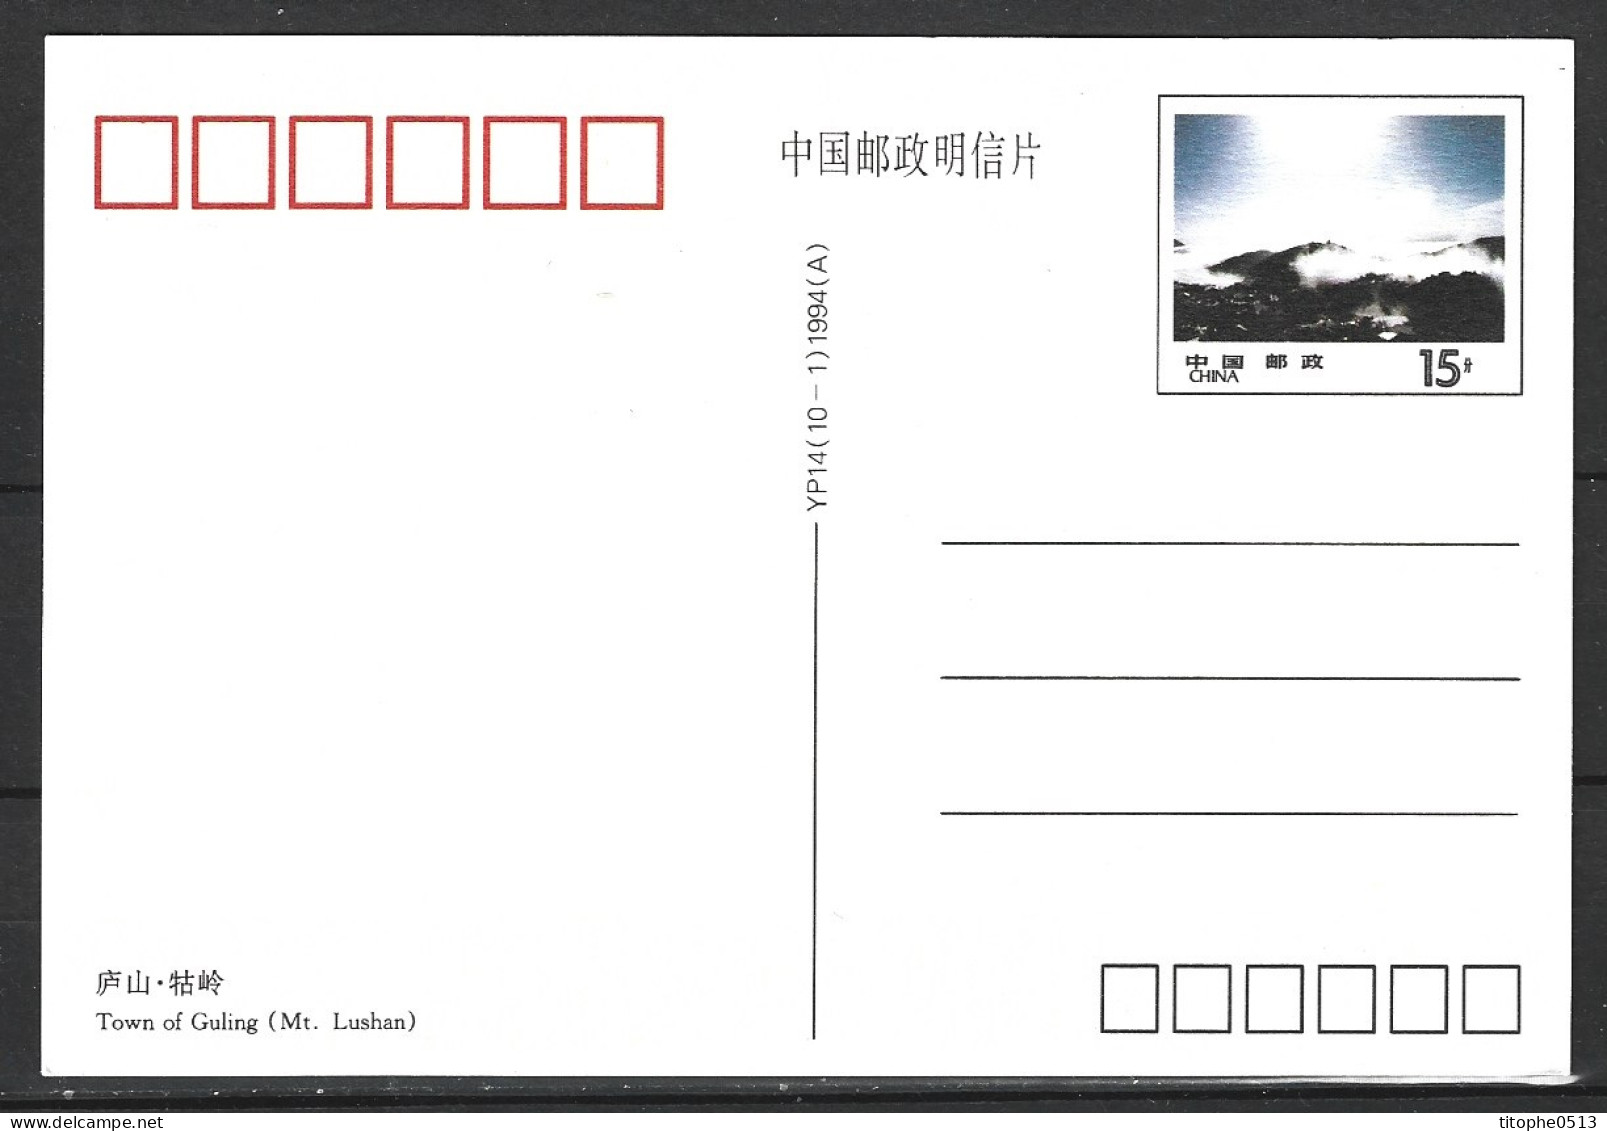 CHINE. 6 Cartes postales pré-timbrées de 1994. Mont Lushan.